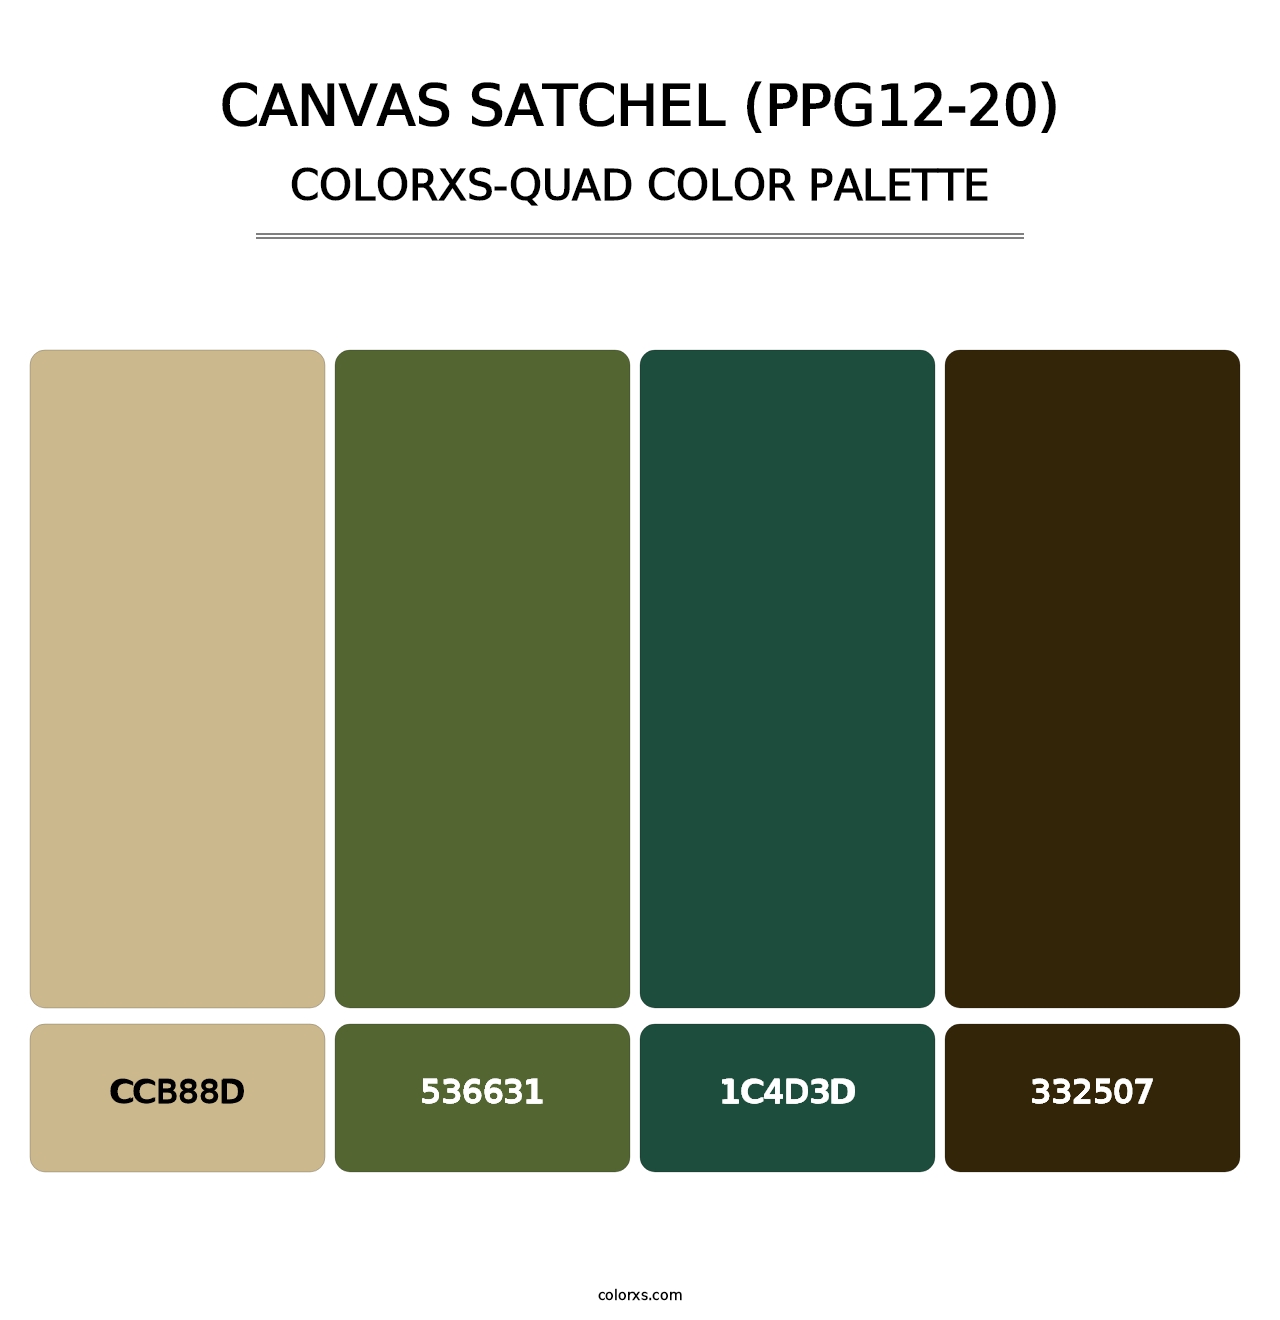 Canvas Satchel (PPG12-20) - Colorxs Quad Palette